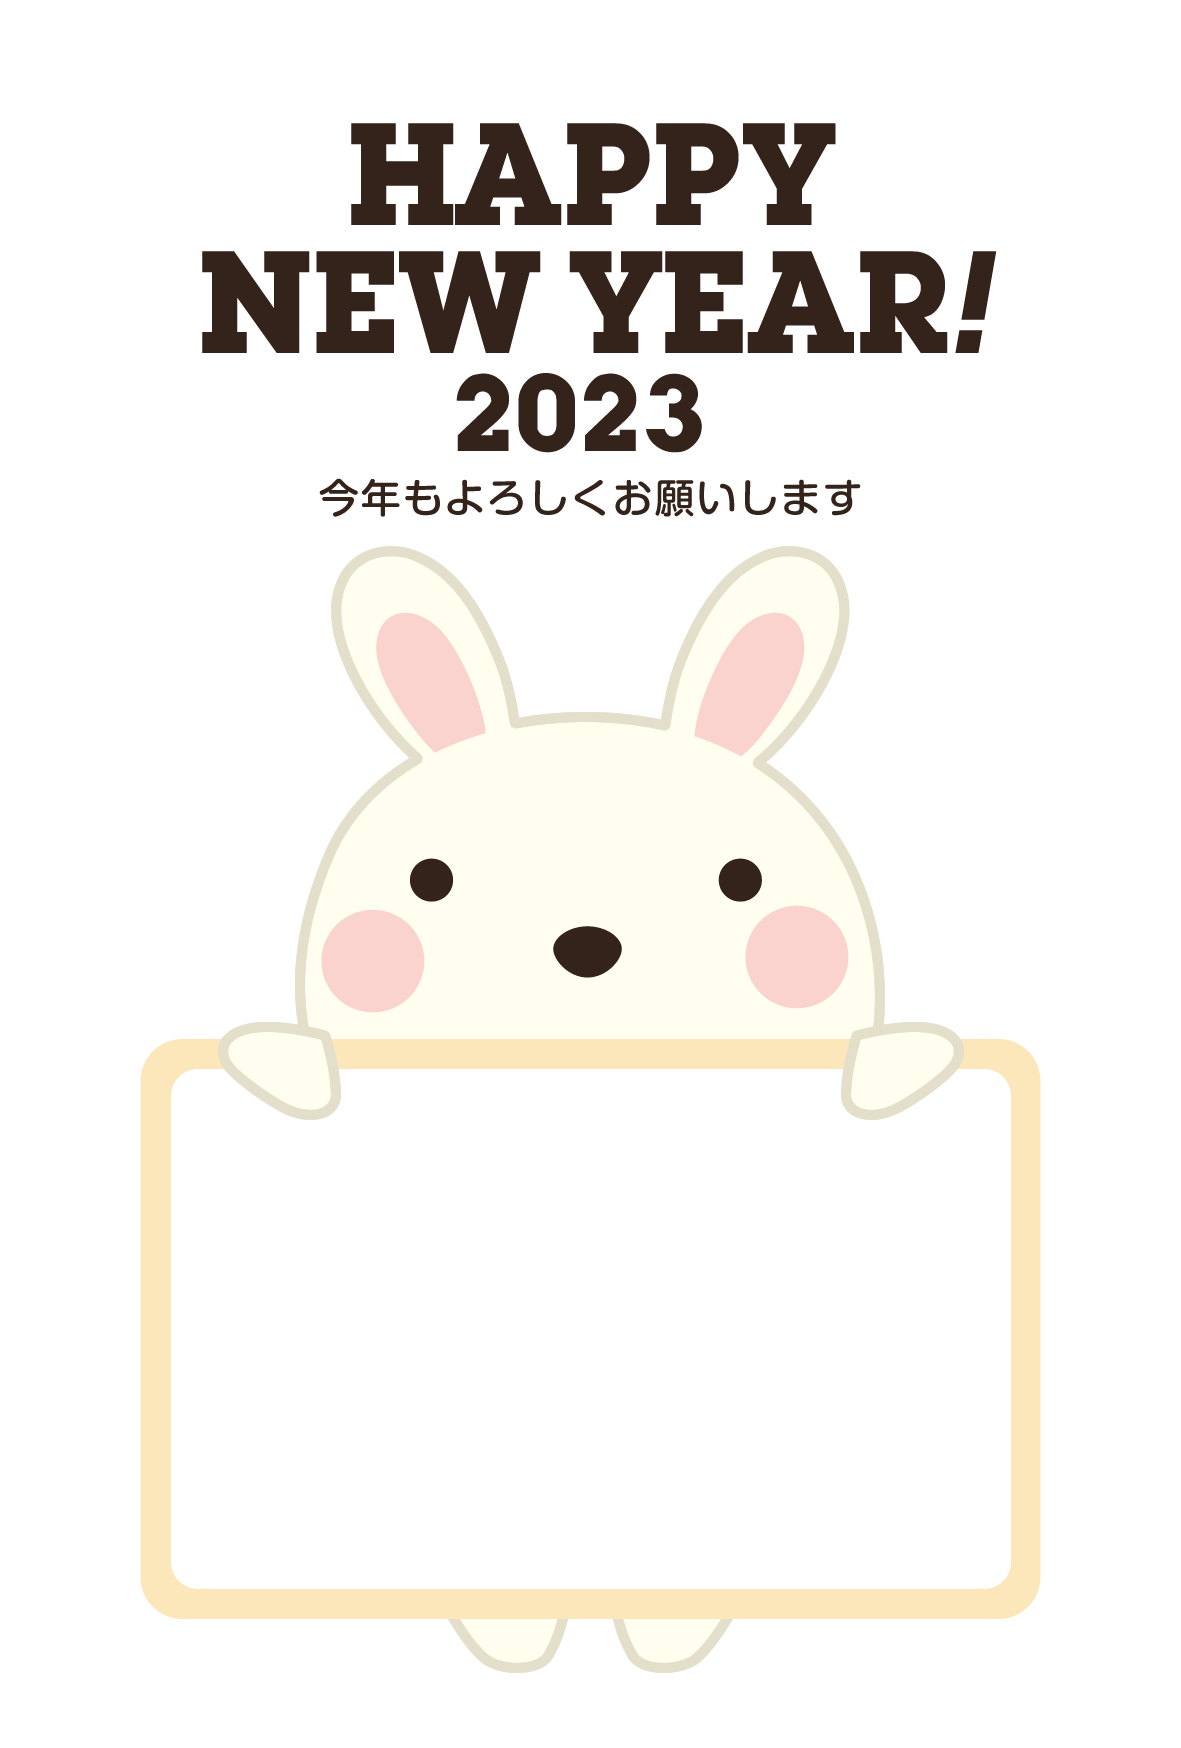 【写真フレーム】2023年賀状無料テンプレート「フォトフレームを持つかわいいウサギ」